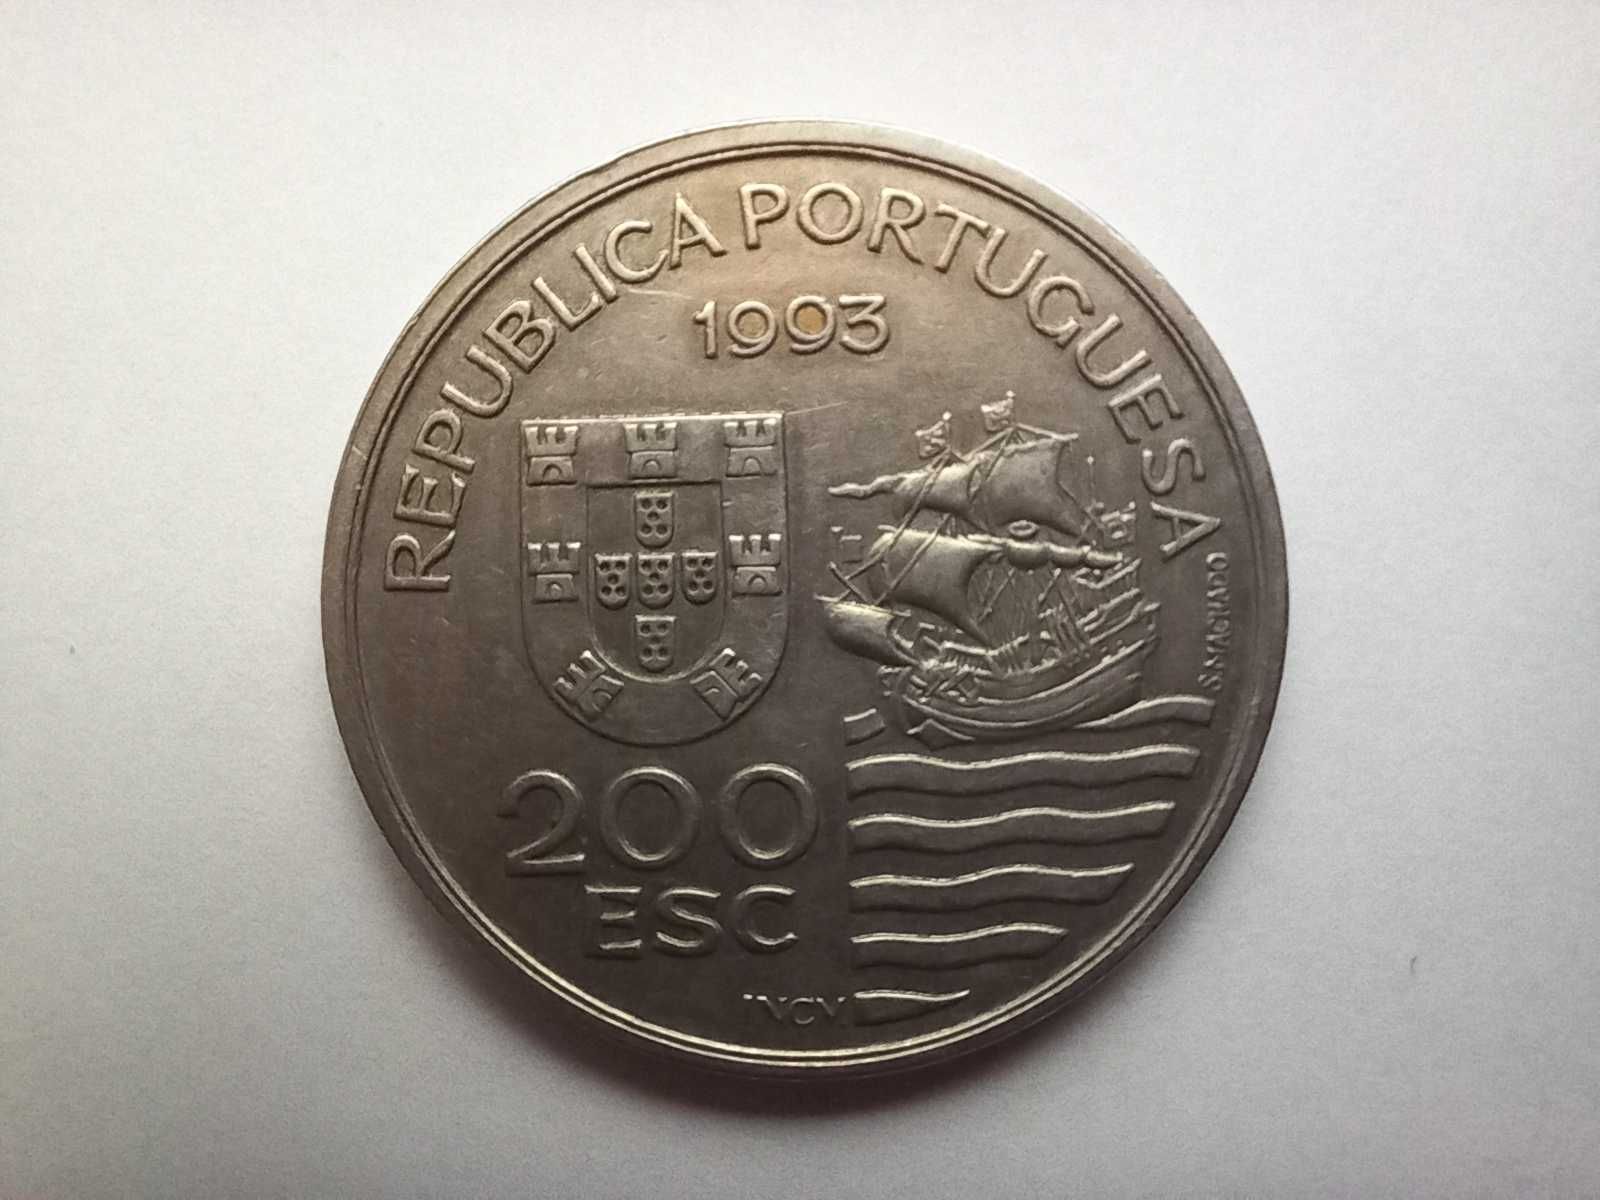 Portugal 200 escudos, 1993 - Enviados Daimios Kiushu